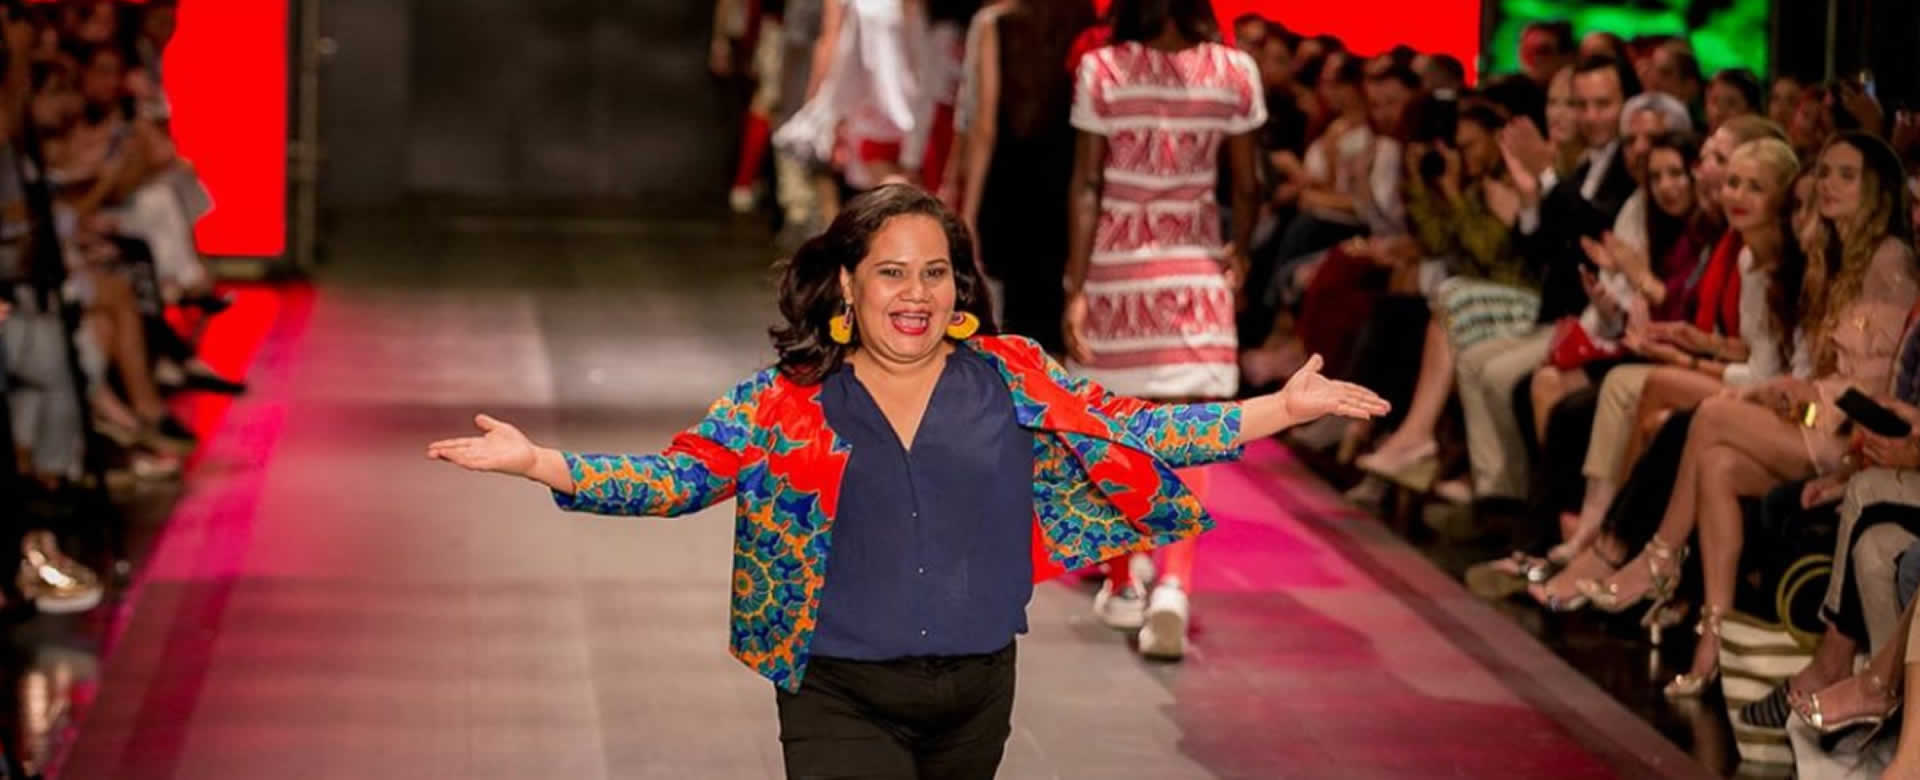 Conoce a los diseñadores nacionales que estarán en Nicaragua Diseña